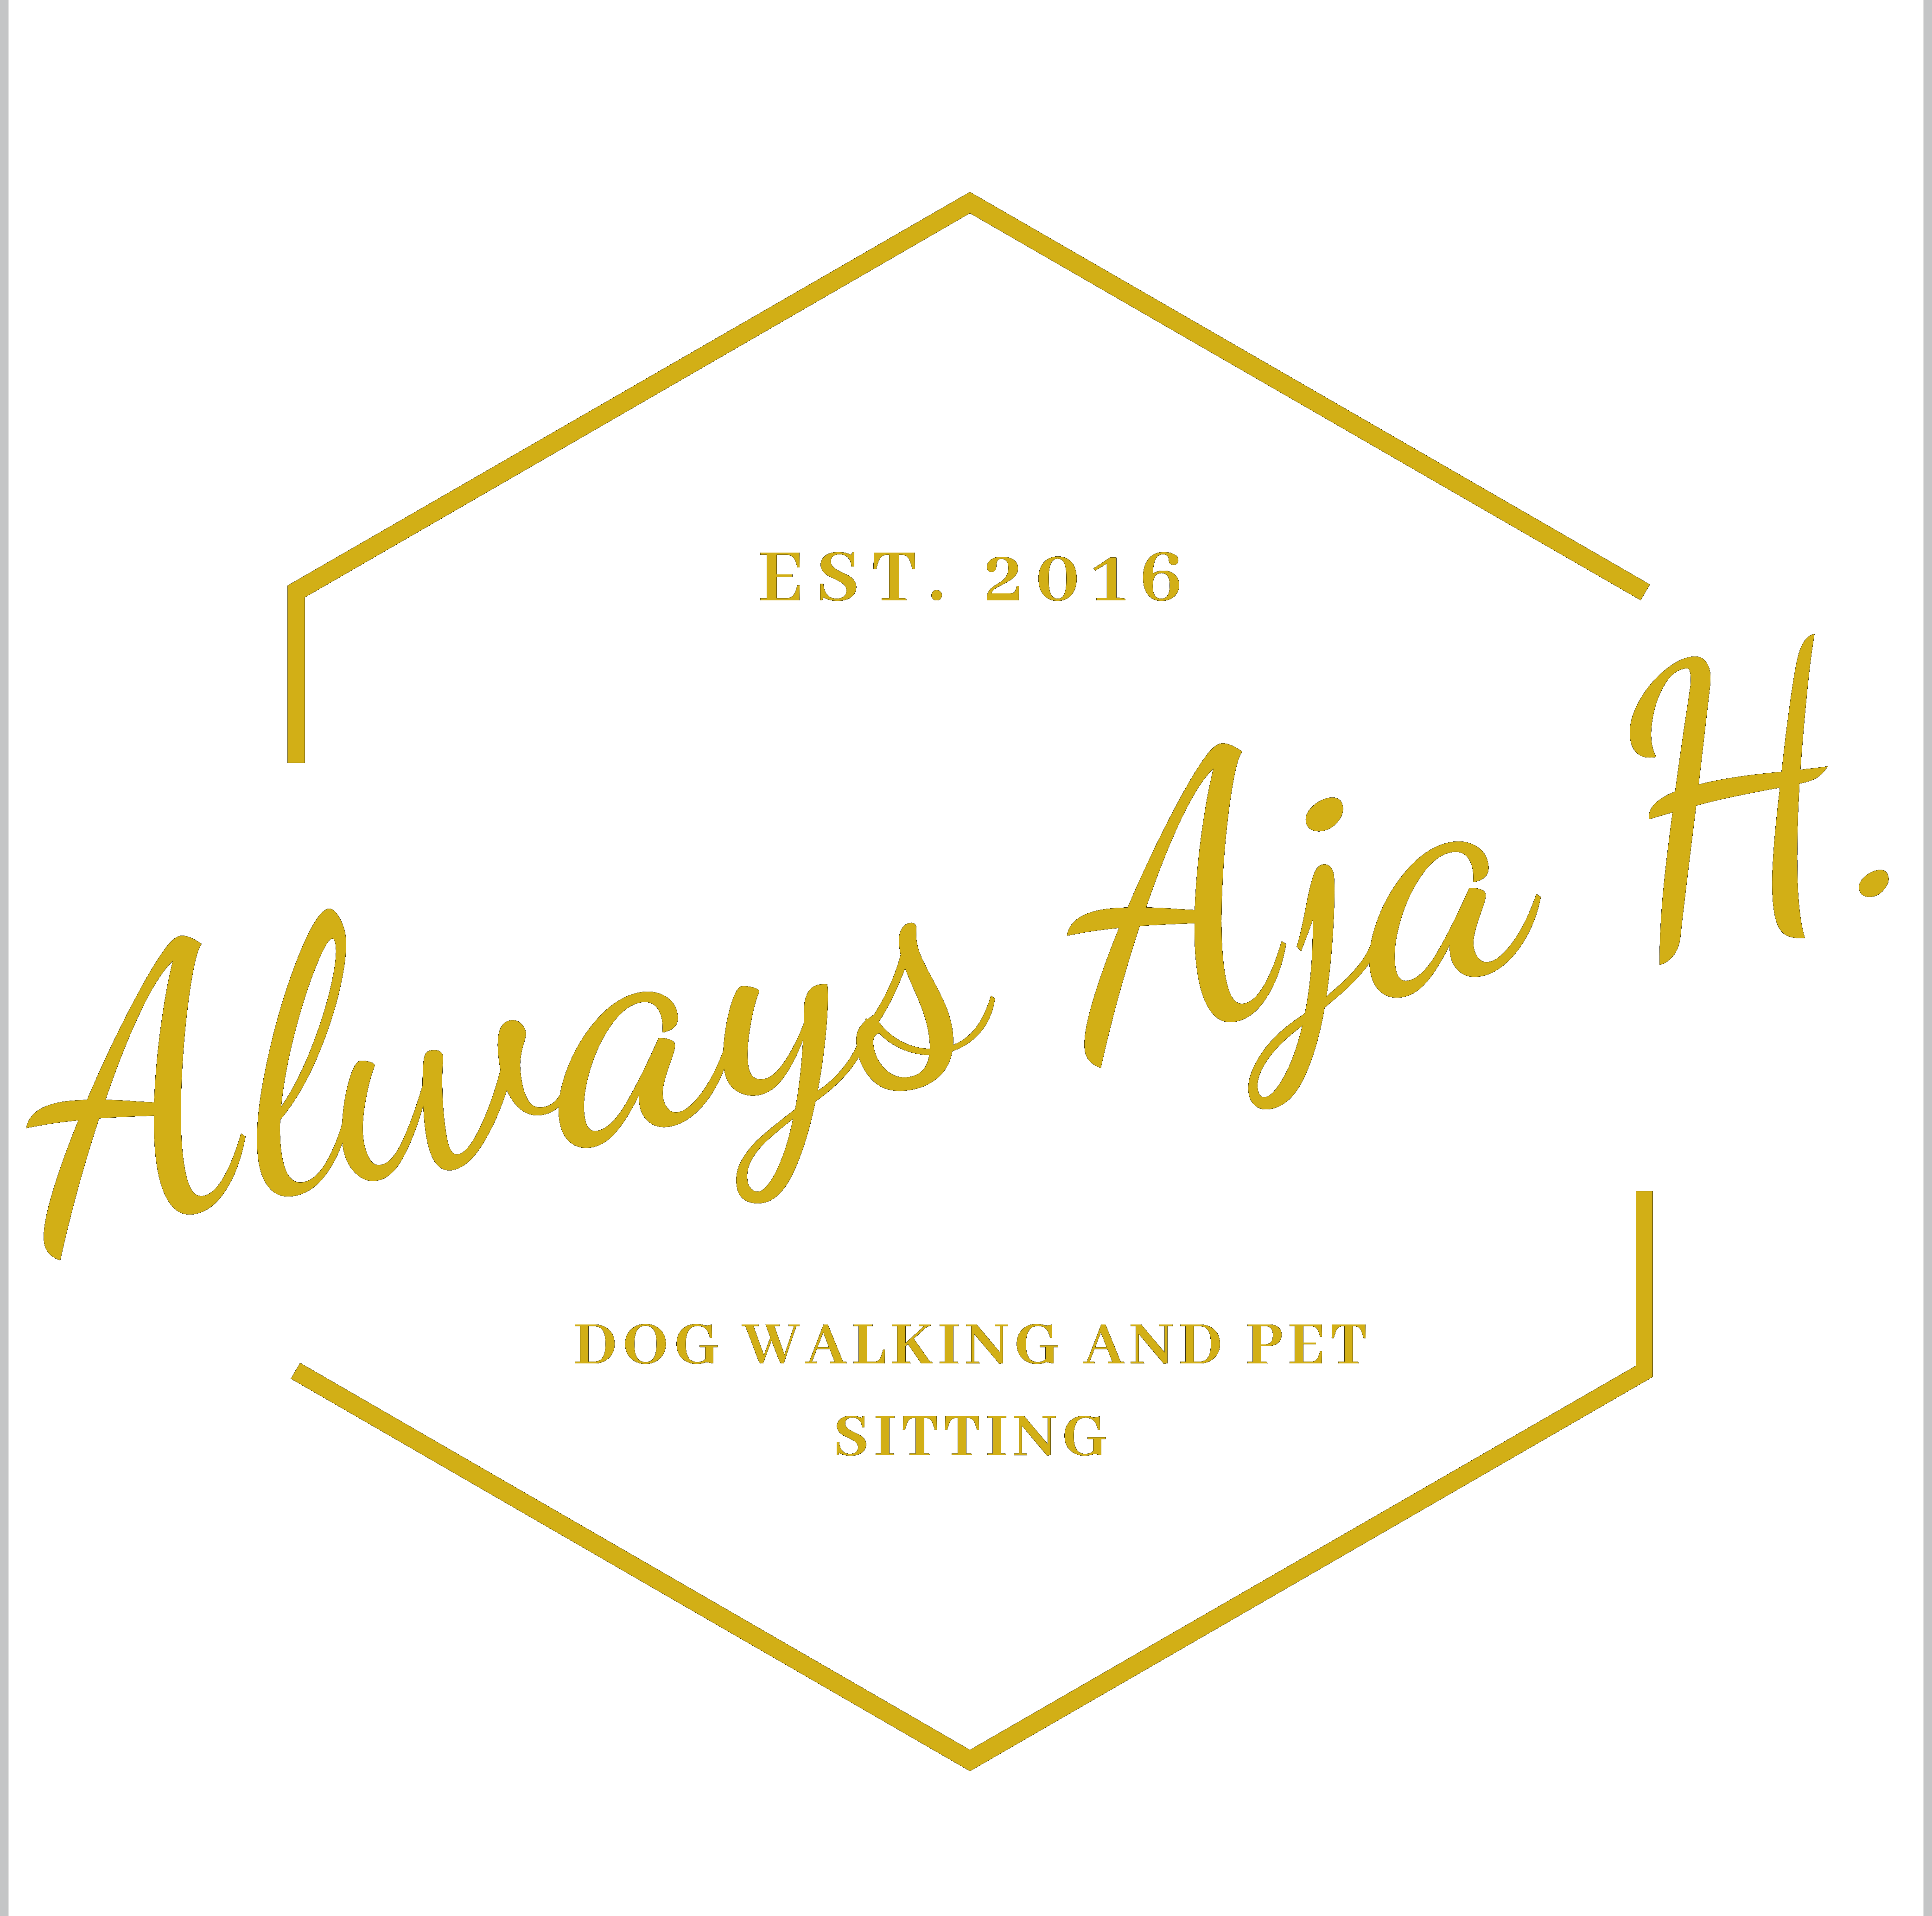 Always Aja H. Established 2016